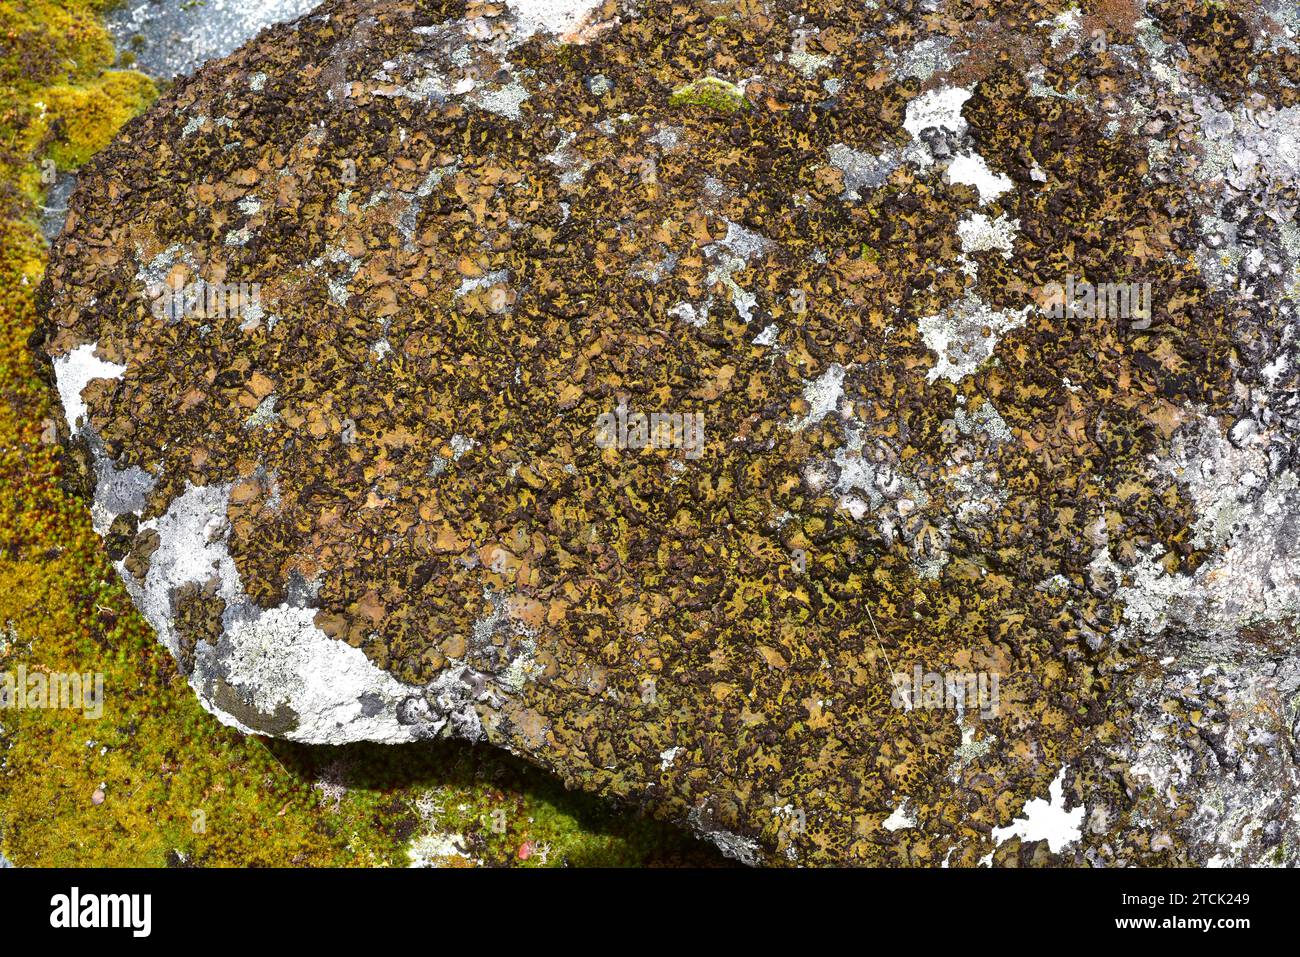 Lichen community dominated by Umbilicaria pustulata or Lasallia pustulata a foliose lichen. This photo was taken in Arribes del Duero Natural Park, Za Stock Photo